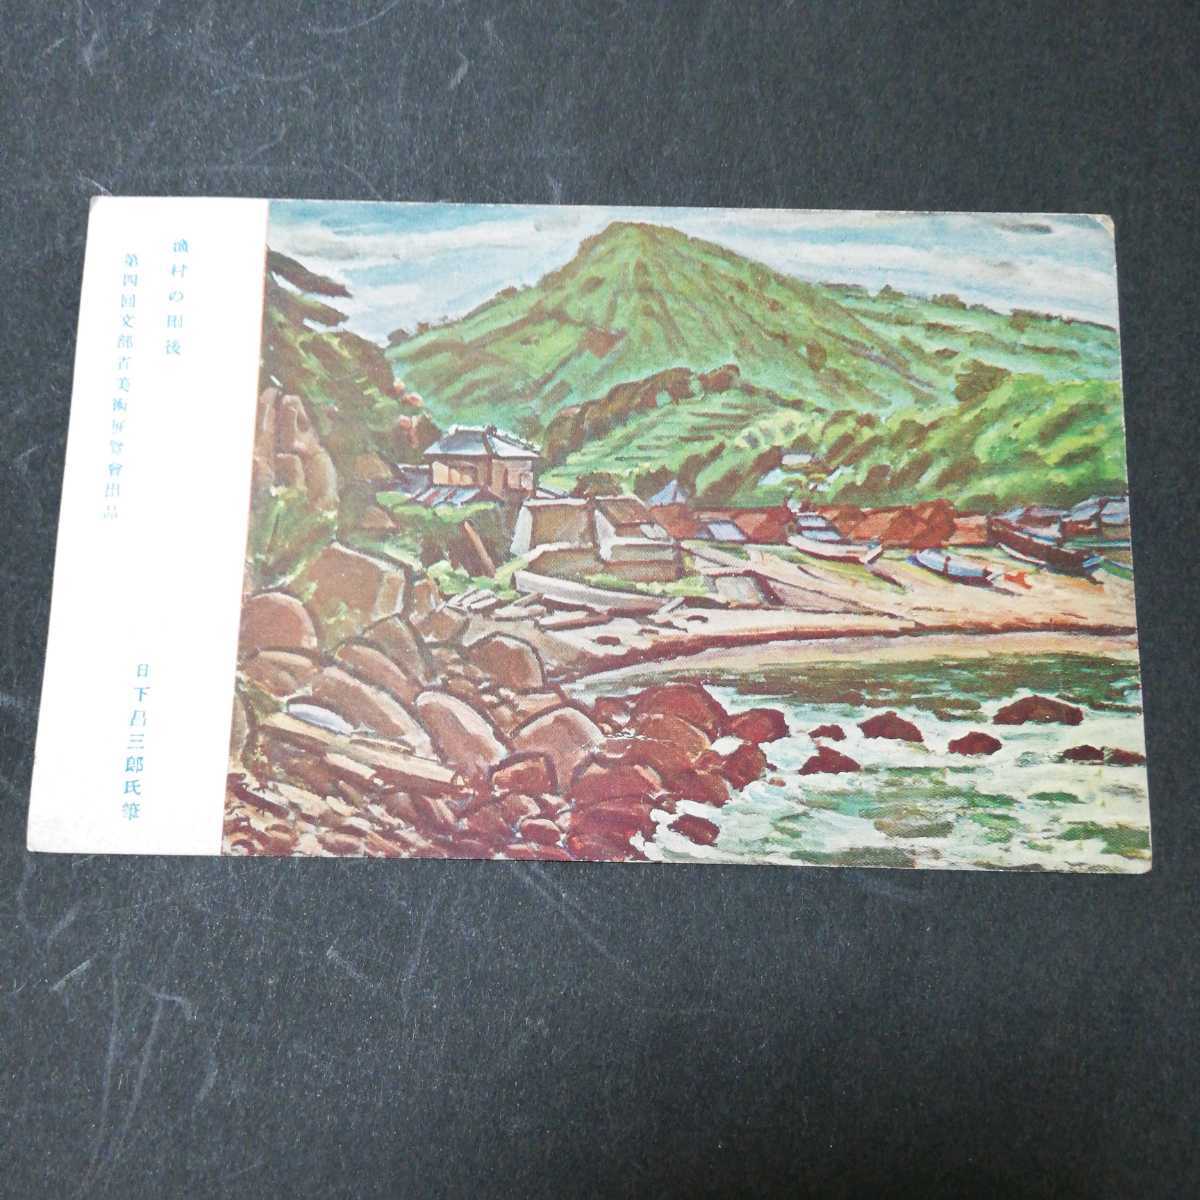 明信片：《雨后的渔村》作者：日下庄三郎 明信片画作作者：Ryohin Senka Art, 印刷材料, 明信片, 明信片, 其他的